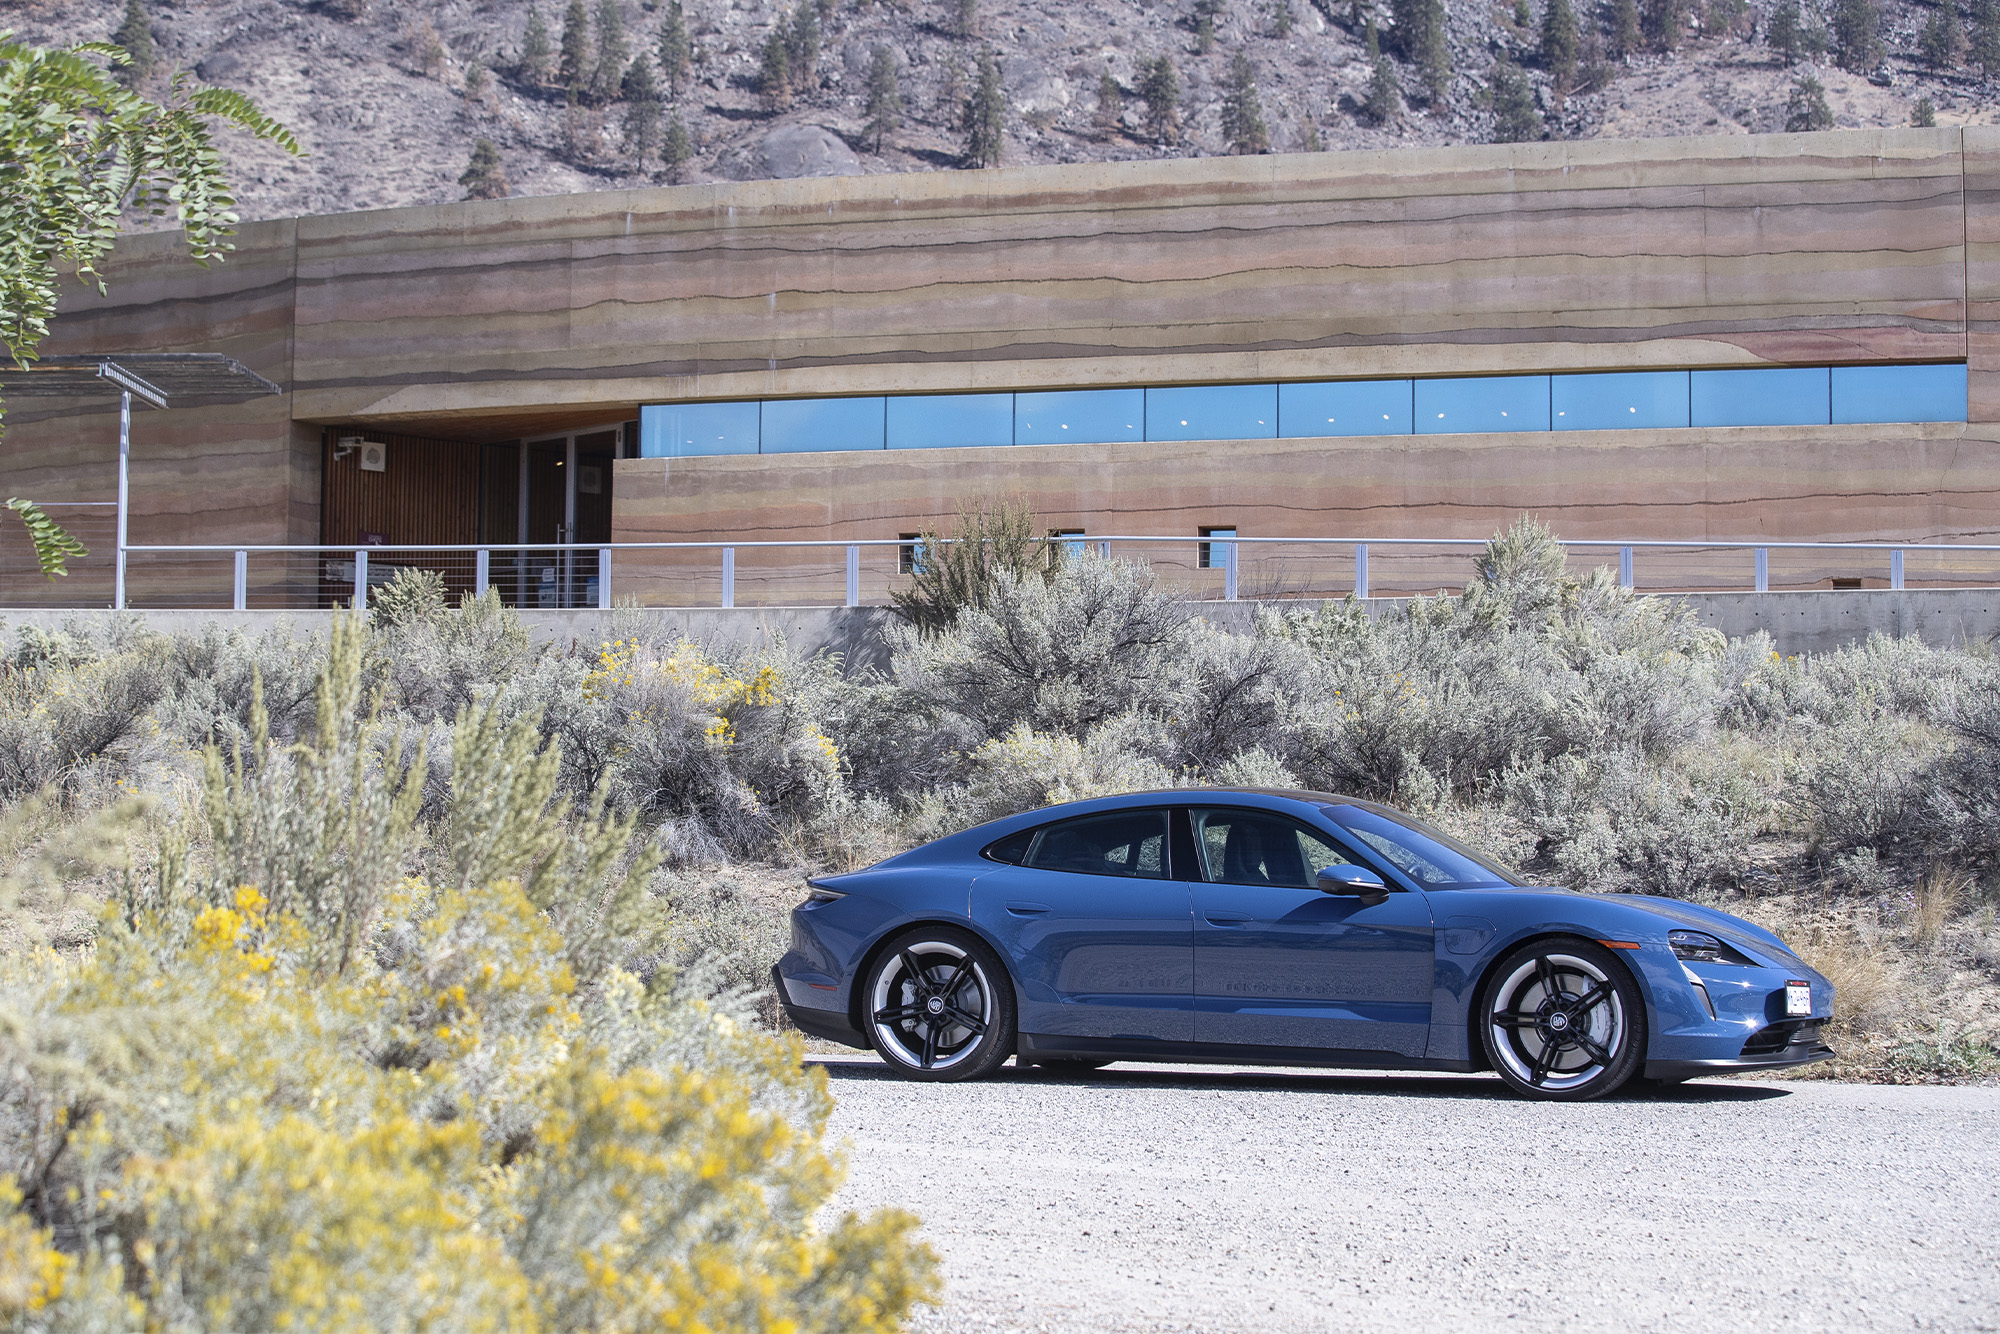 Spirit Ridge Resort: blue Porsche parked in front of brown house in desert